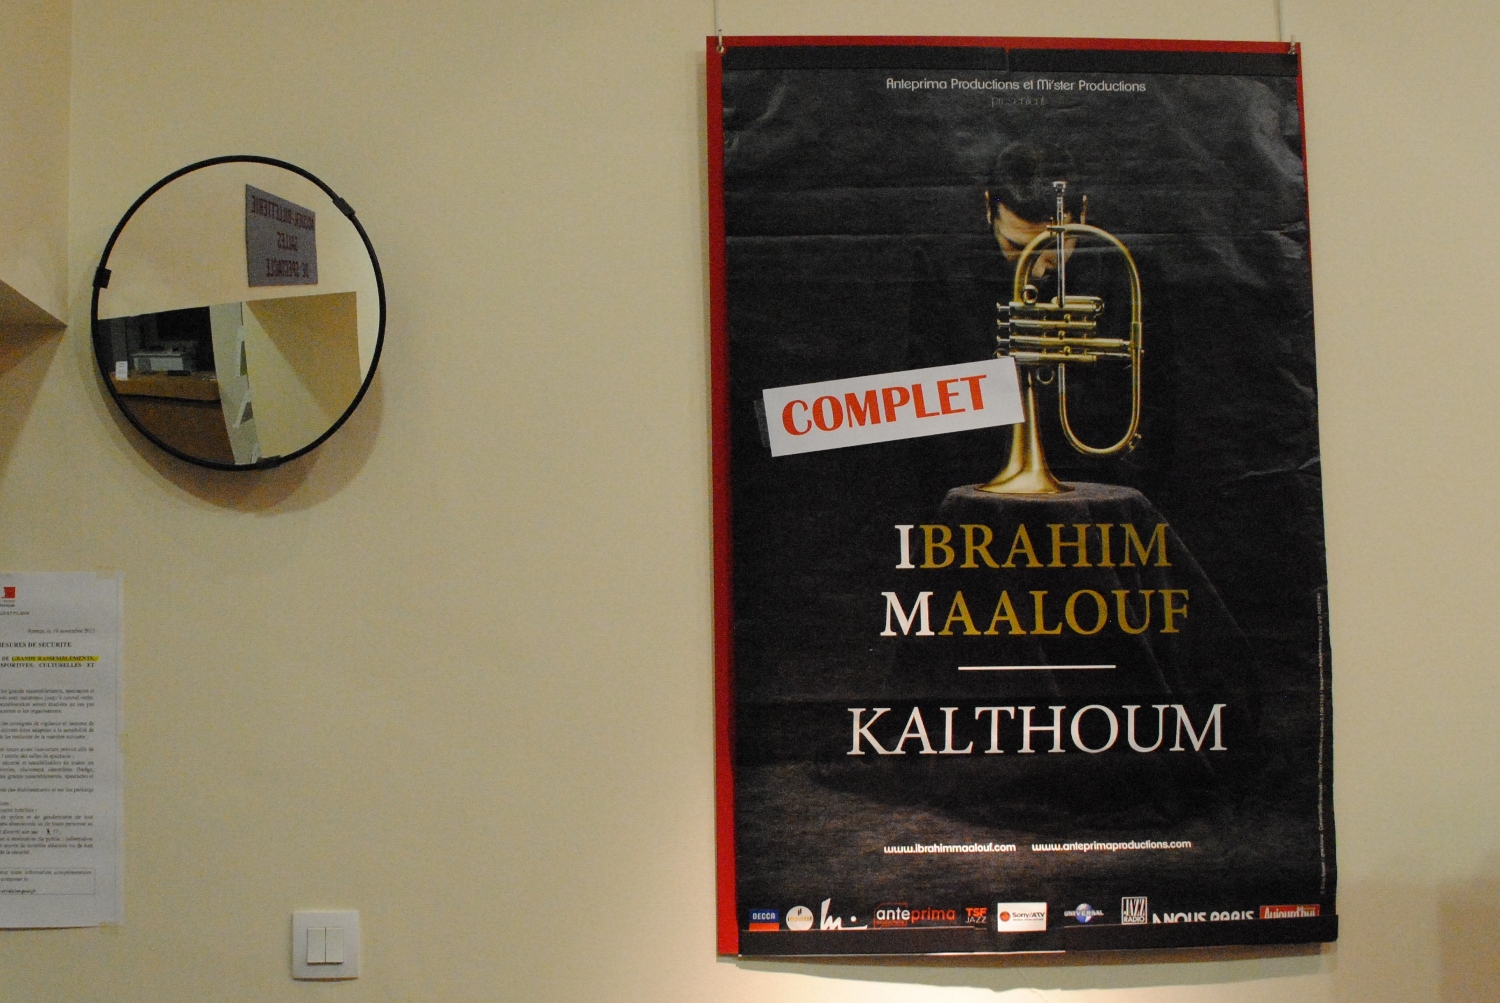 Ibrahim Maalouf est en tournée pour présenter son dernier album, 